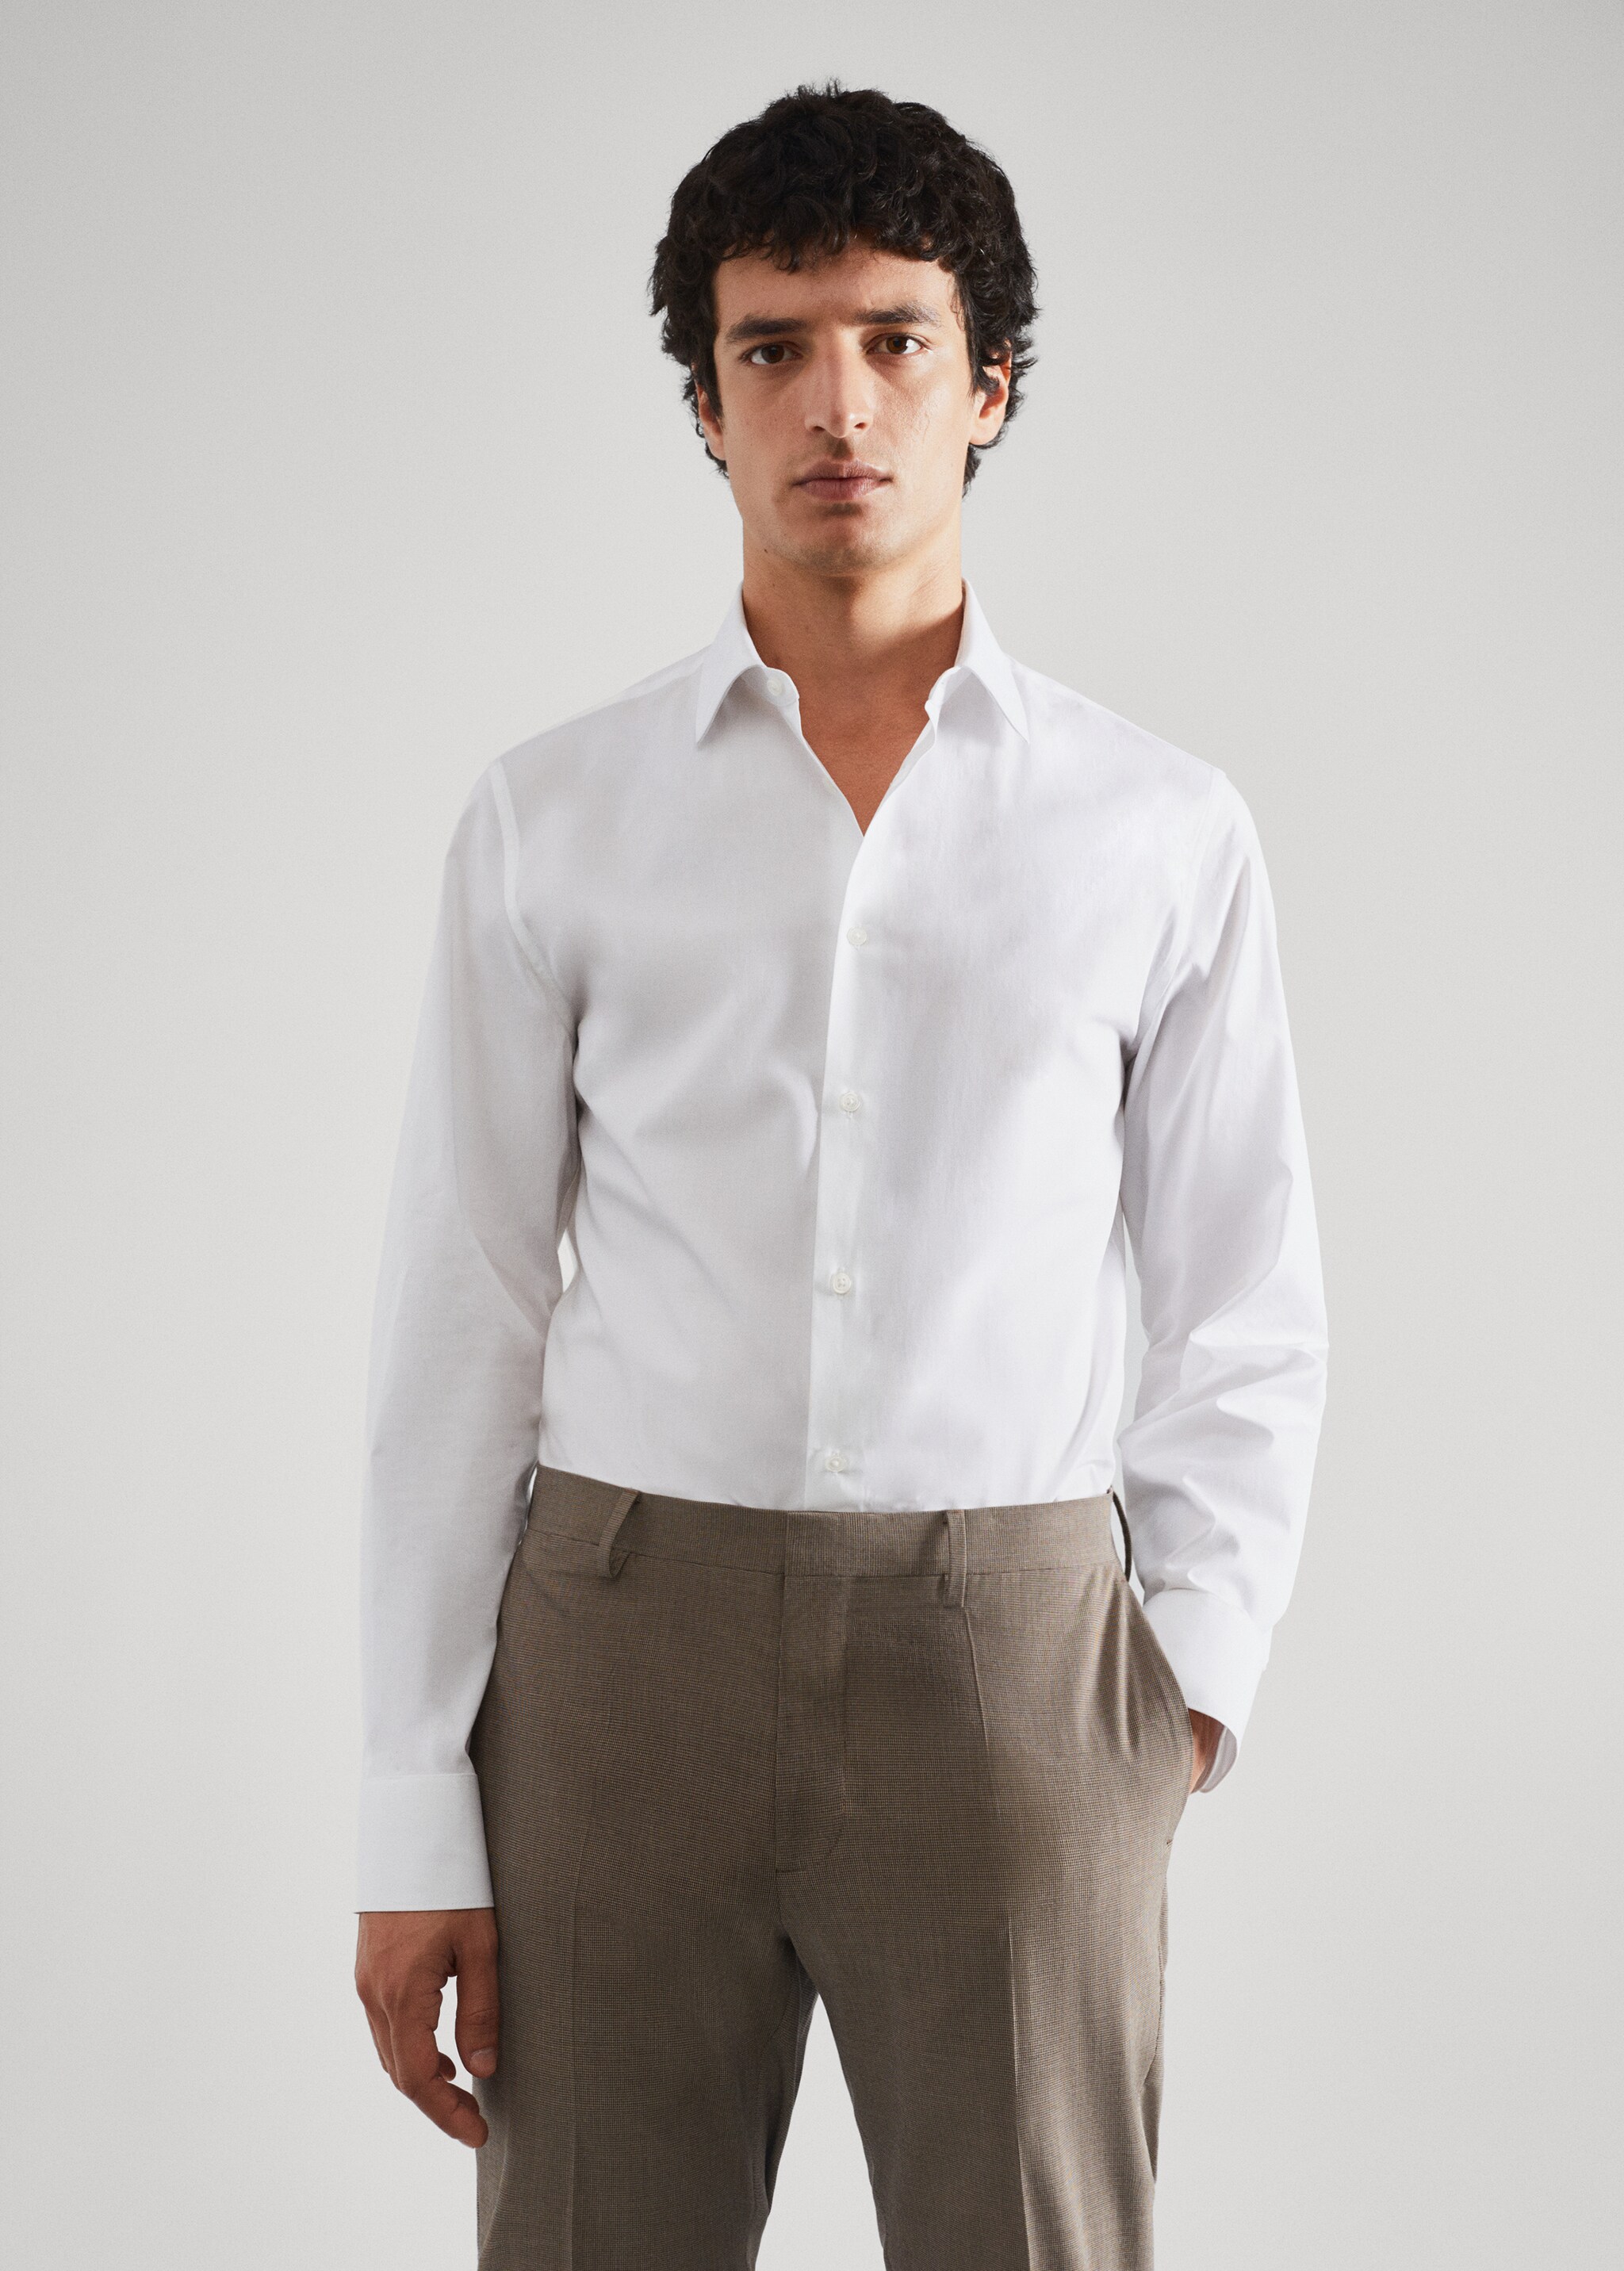 Slim fit stretch cotton suit shirt - Medium plane